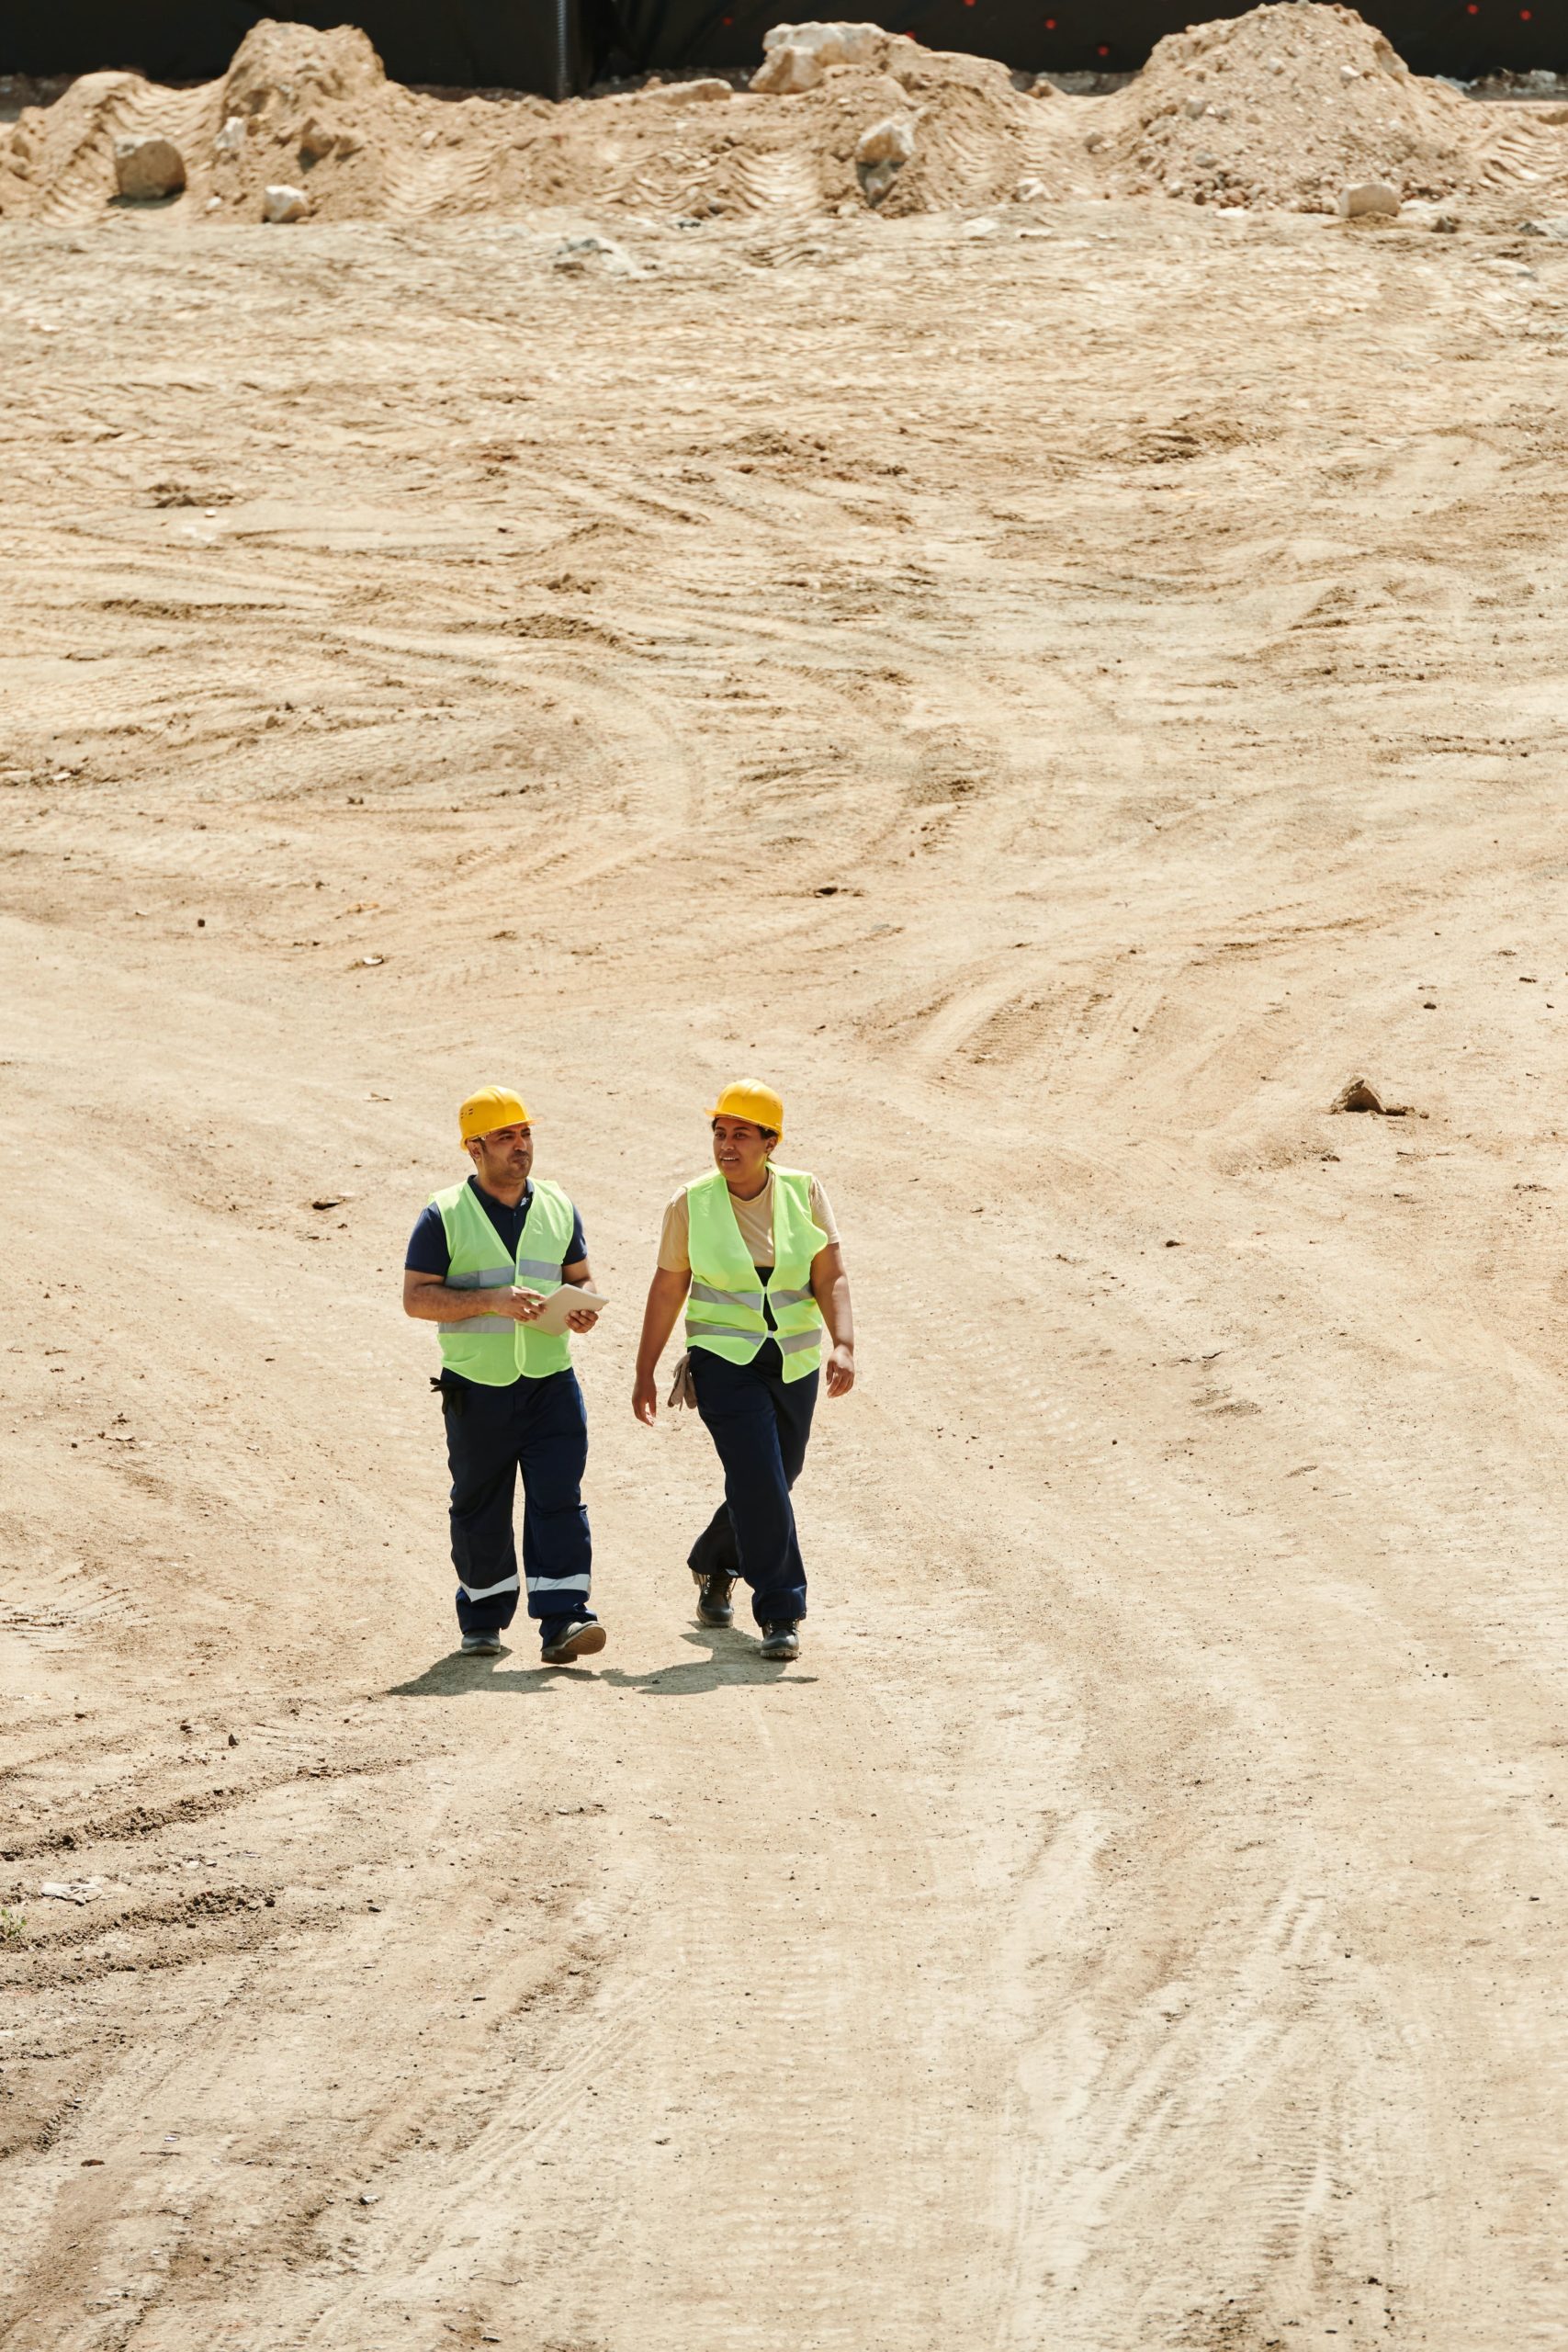 deux responsables de chantier marchent sur les gravas du lieu de chantier avec des équipements de protection